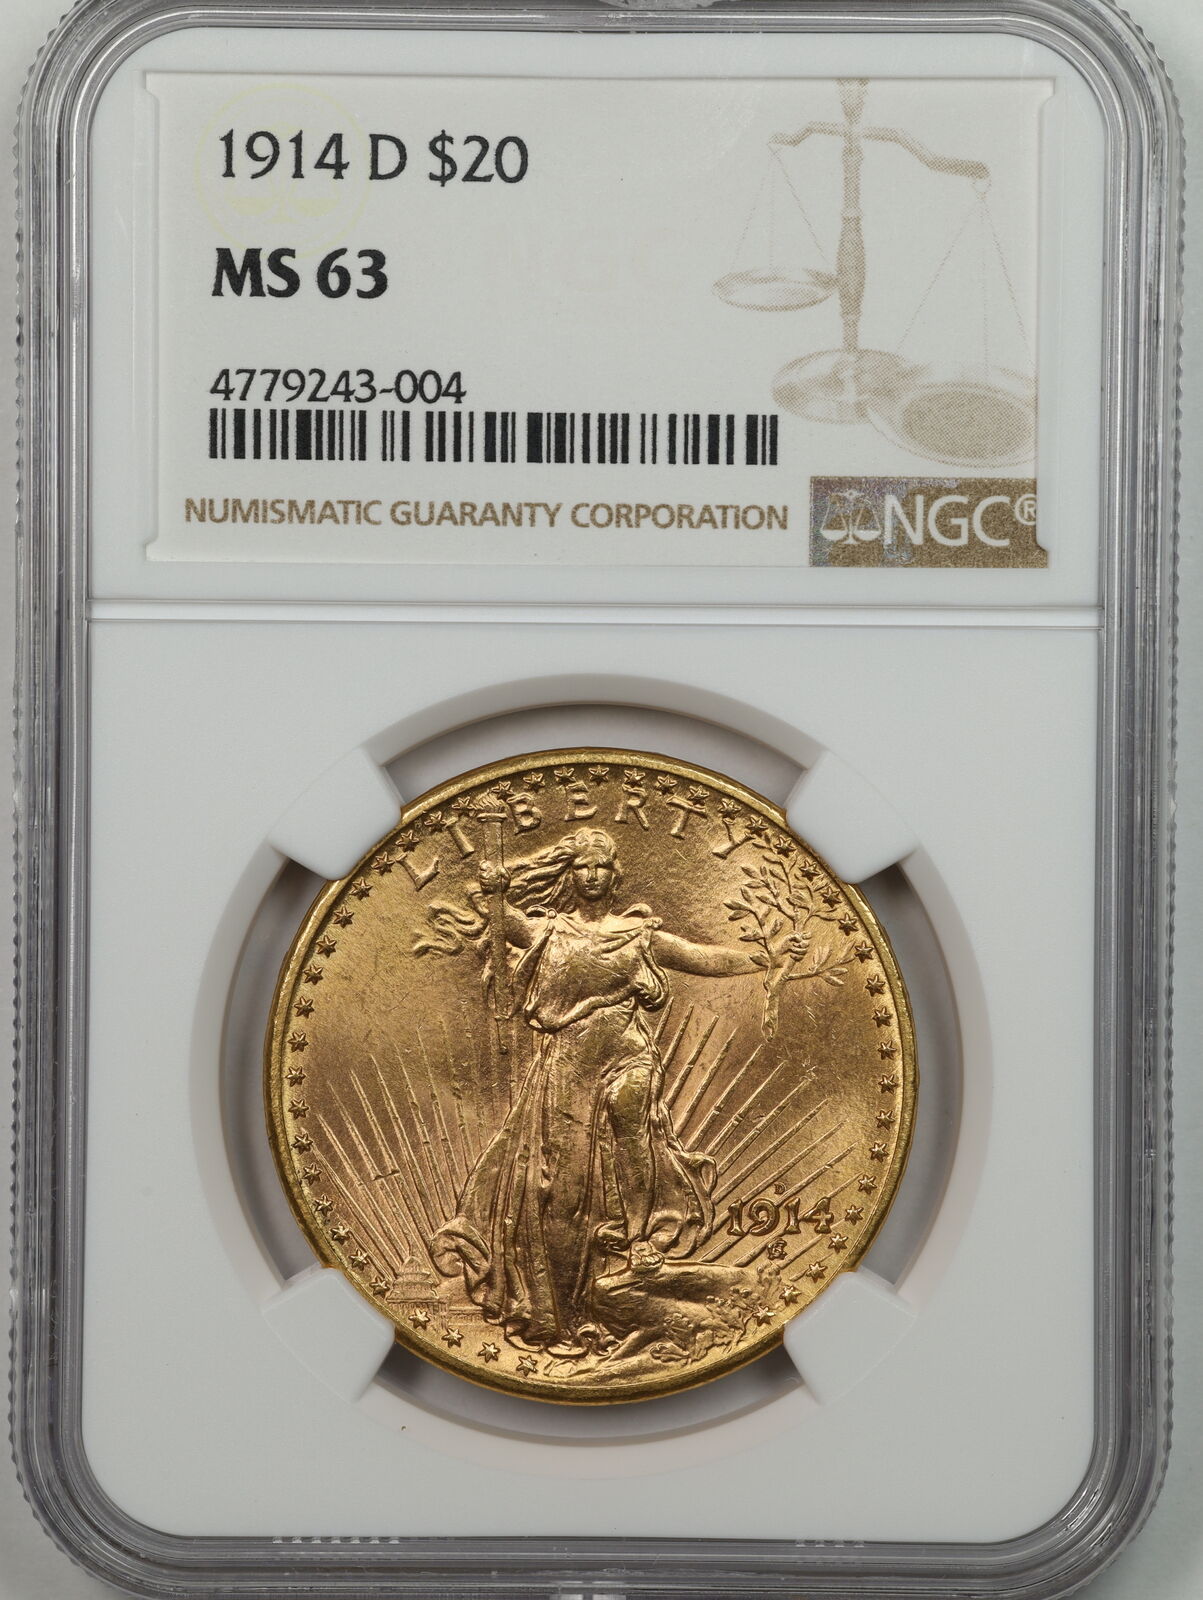 1914-d $20 Saint-gaudens Gold Double Eagle Ms63 Ngc 4779243-004